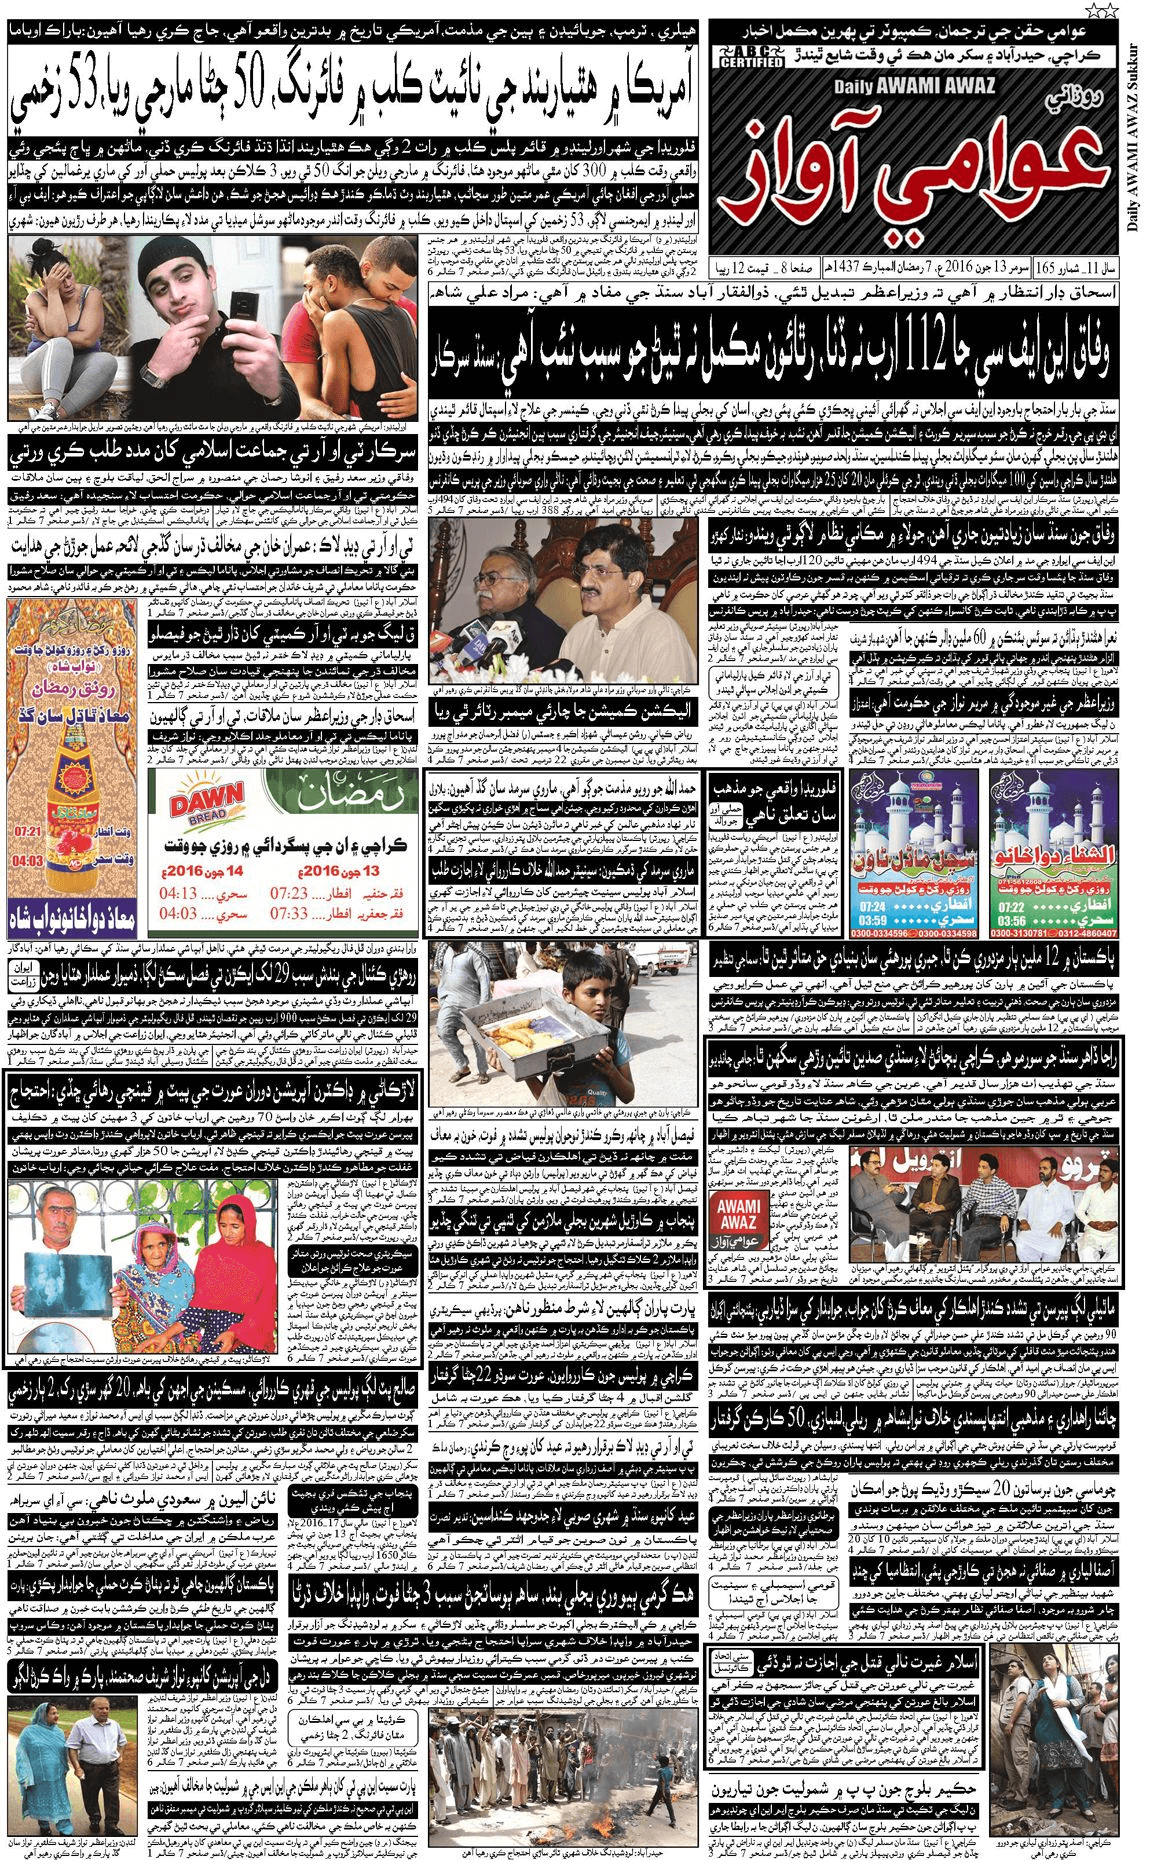 pakistan urdu newspapers 24 daily awami awaz